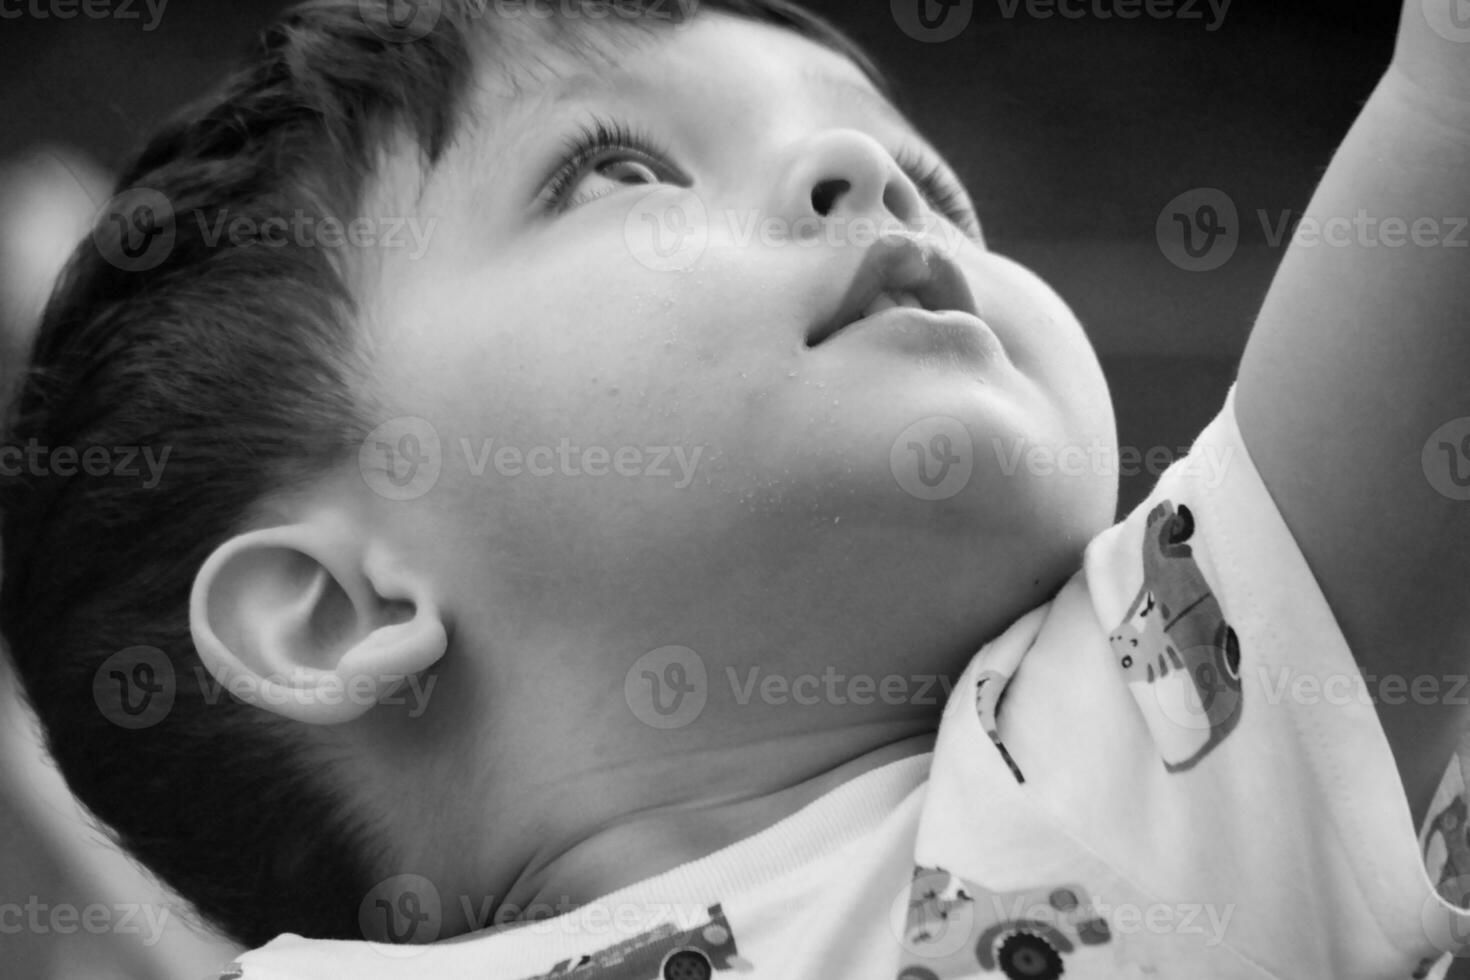 bellissimo vicino su ritratto di un asiatico pakistano bambino ragazzo di nome ahmed mustafain haider è in posa a casa giardino a santo agostino Ave lutone, Inghilterra UK. Immagine era catturato su aprile 03, 2023. foto